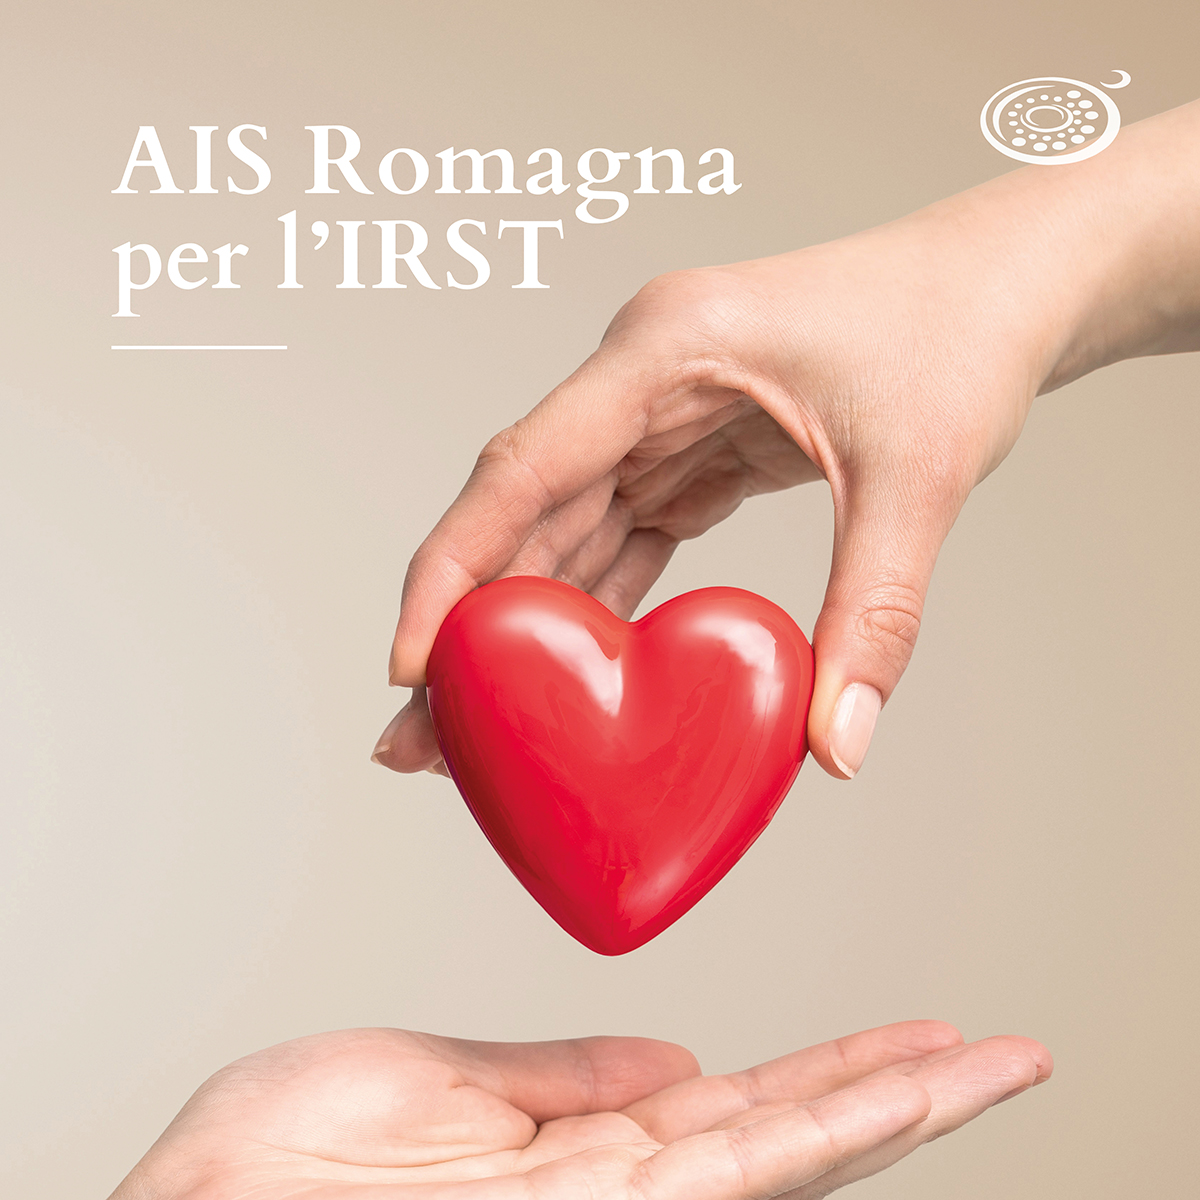 Mani che cedono un cuore: AIS Romagna per l'irst